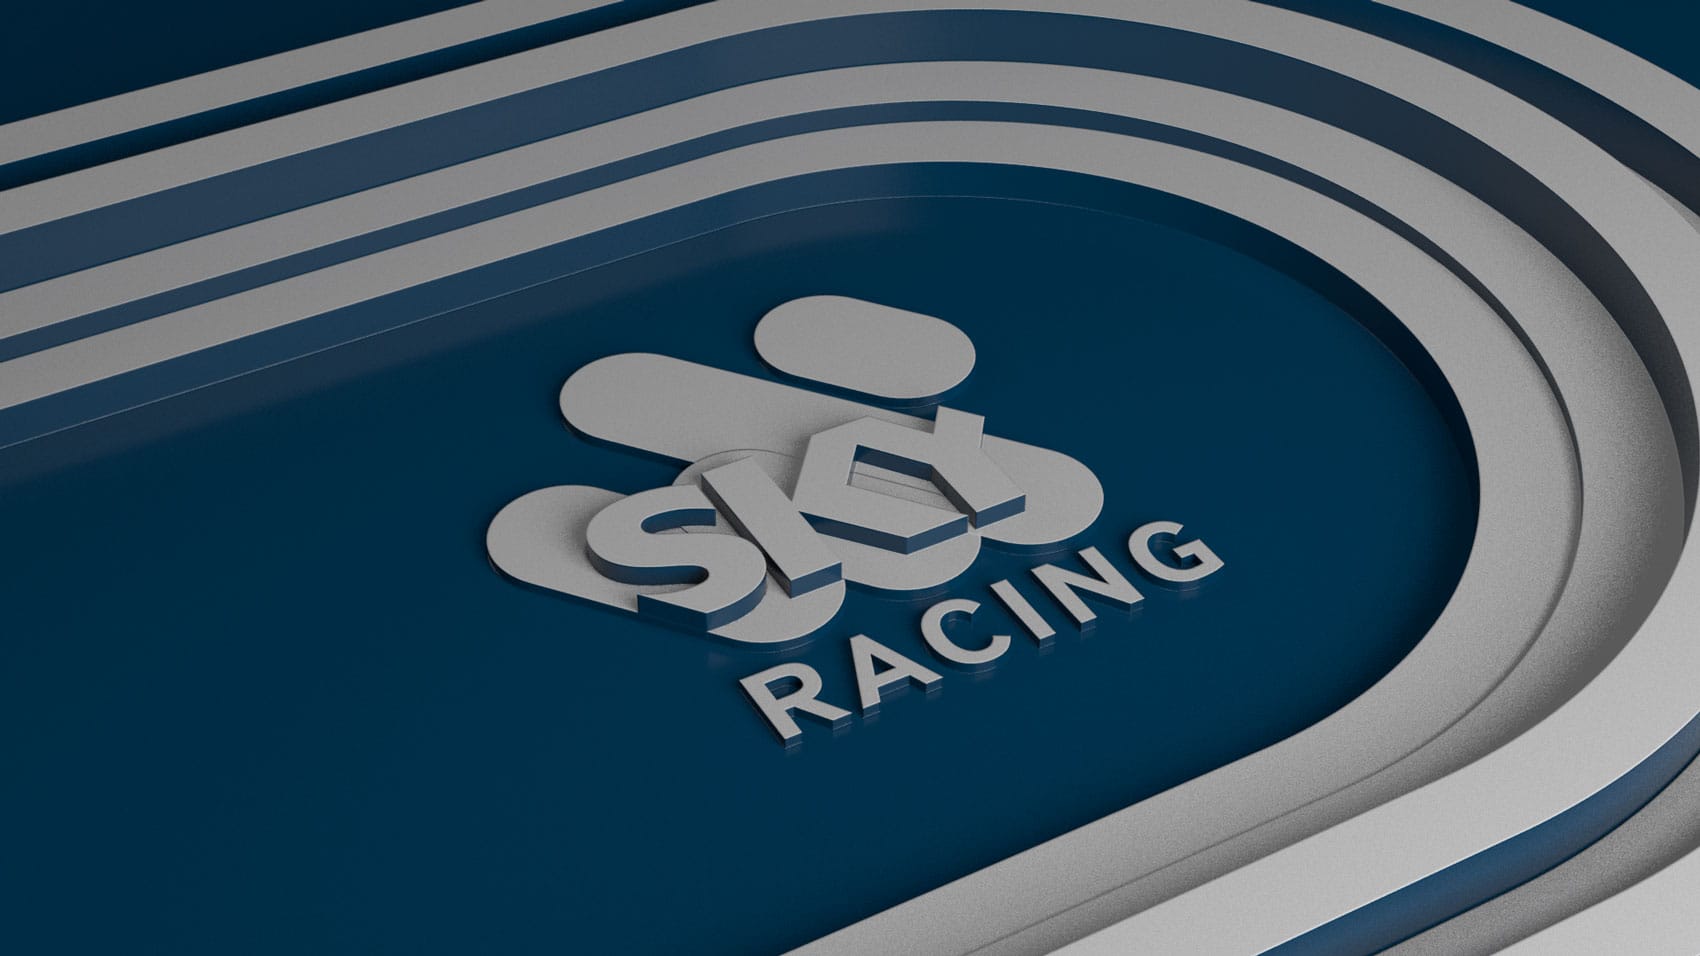 2019 Sky Racing Concept Stills 05 Girraphic